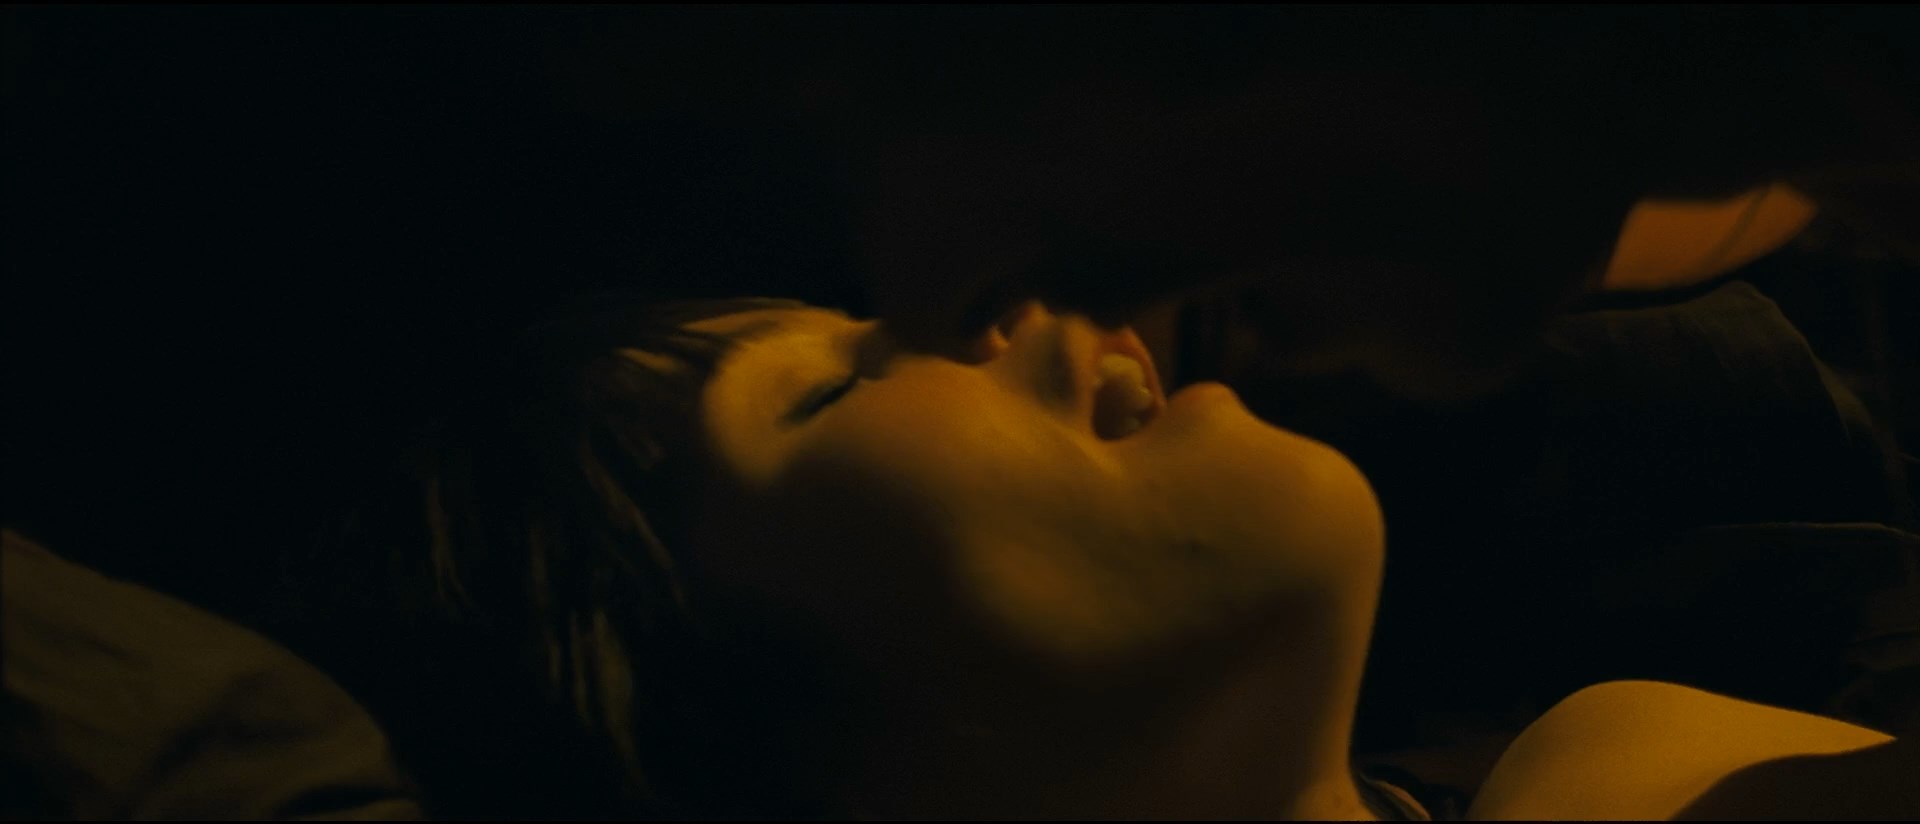 Gemma Arterton - A Deal Is A Deal - 1080p.